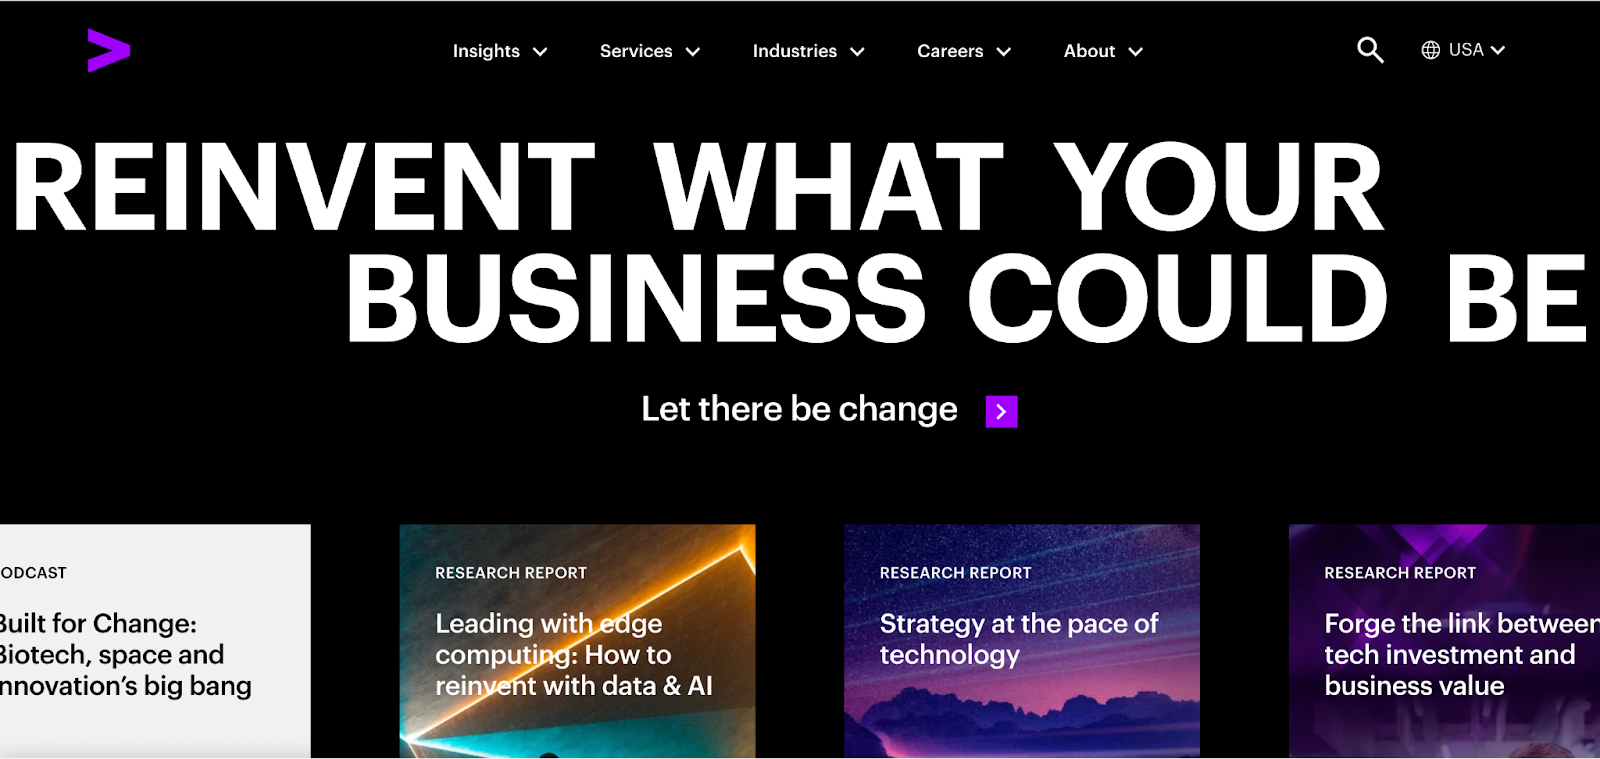 best consulting websites; Accenture